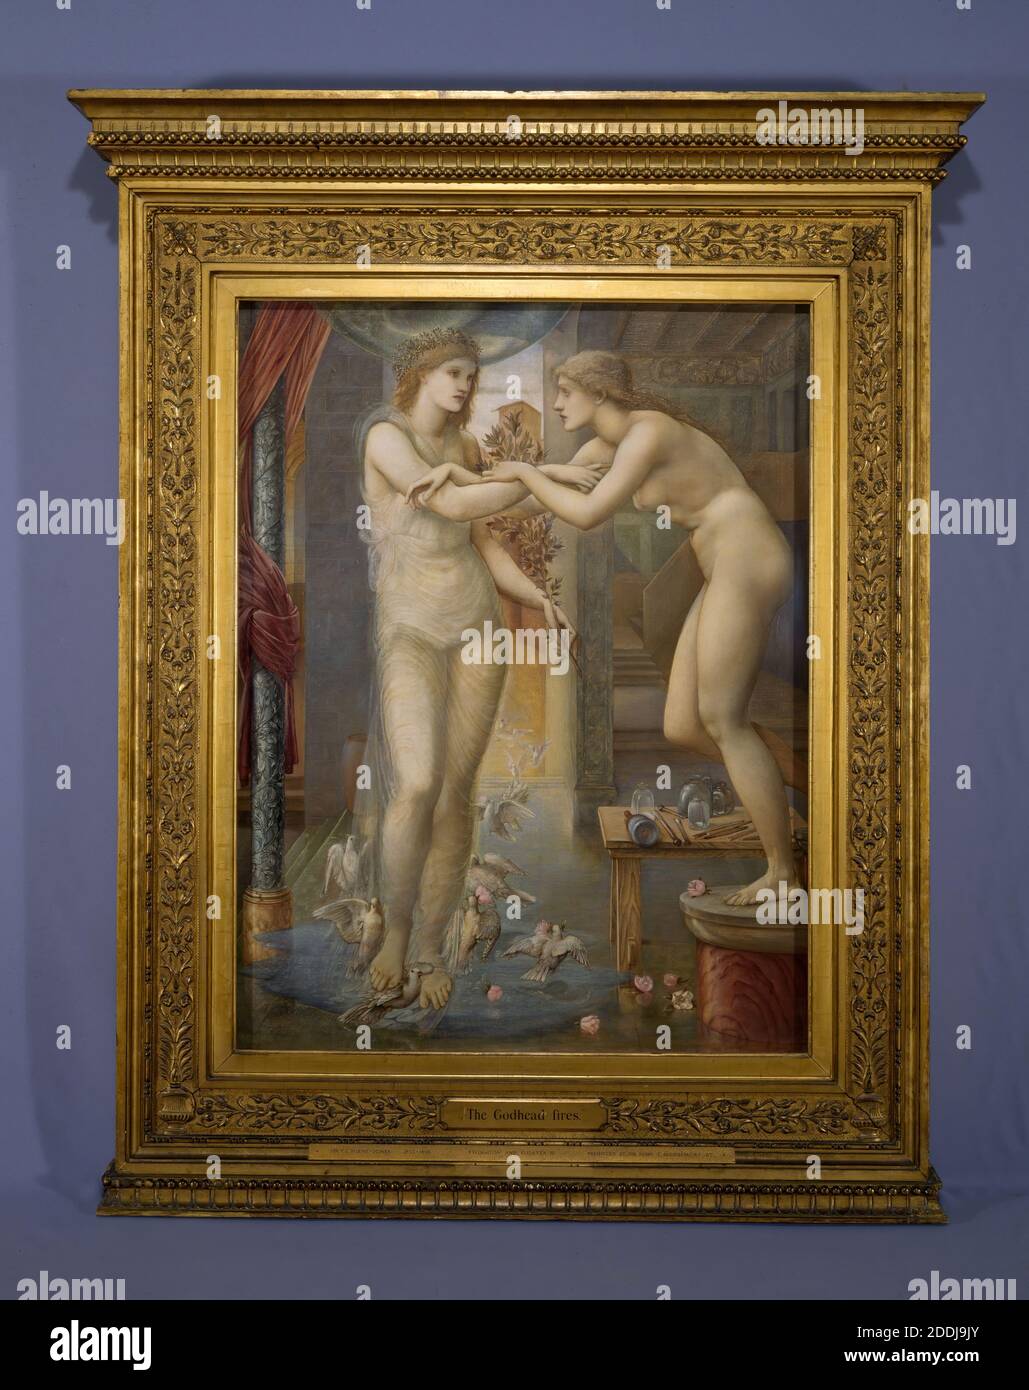 Pygmalion und das Bild, die Gottheit Feuer, 1878 drei in einer Serie von vier Gemälden Künstler: Edward Burne-Jones Öl auf Leinwand, Kunstbewegung, Pre-Raphaelite, 19. Jahrhundert Stockfoto